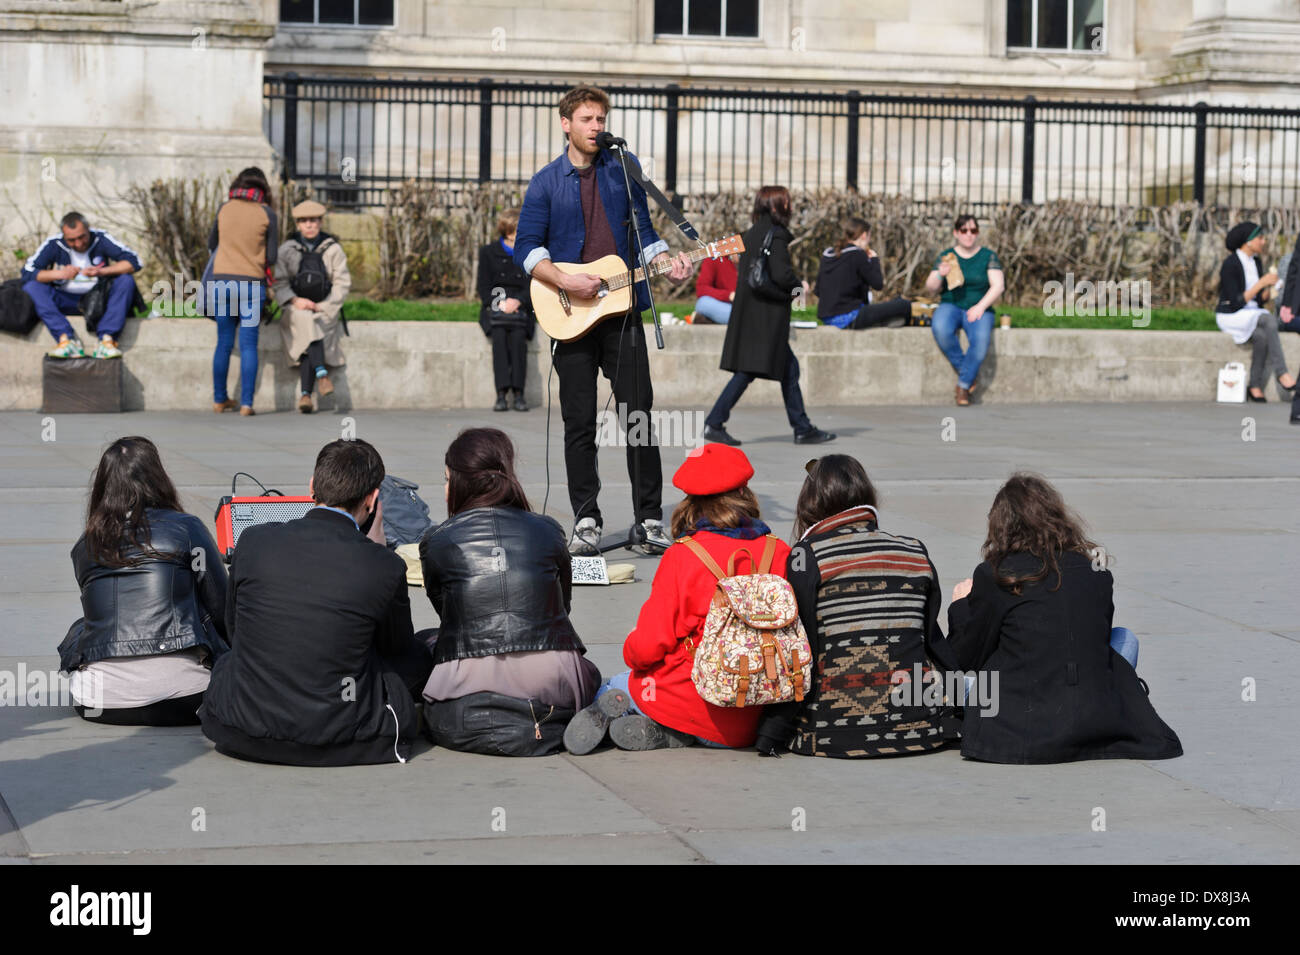 Un chanteur qui joue de la guitare pour un public restreint à Trafalgar Square, Londres, Angleterre, Royaume-Uni. Banque D'Images